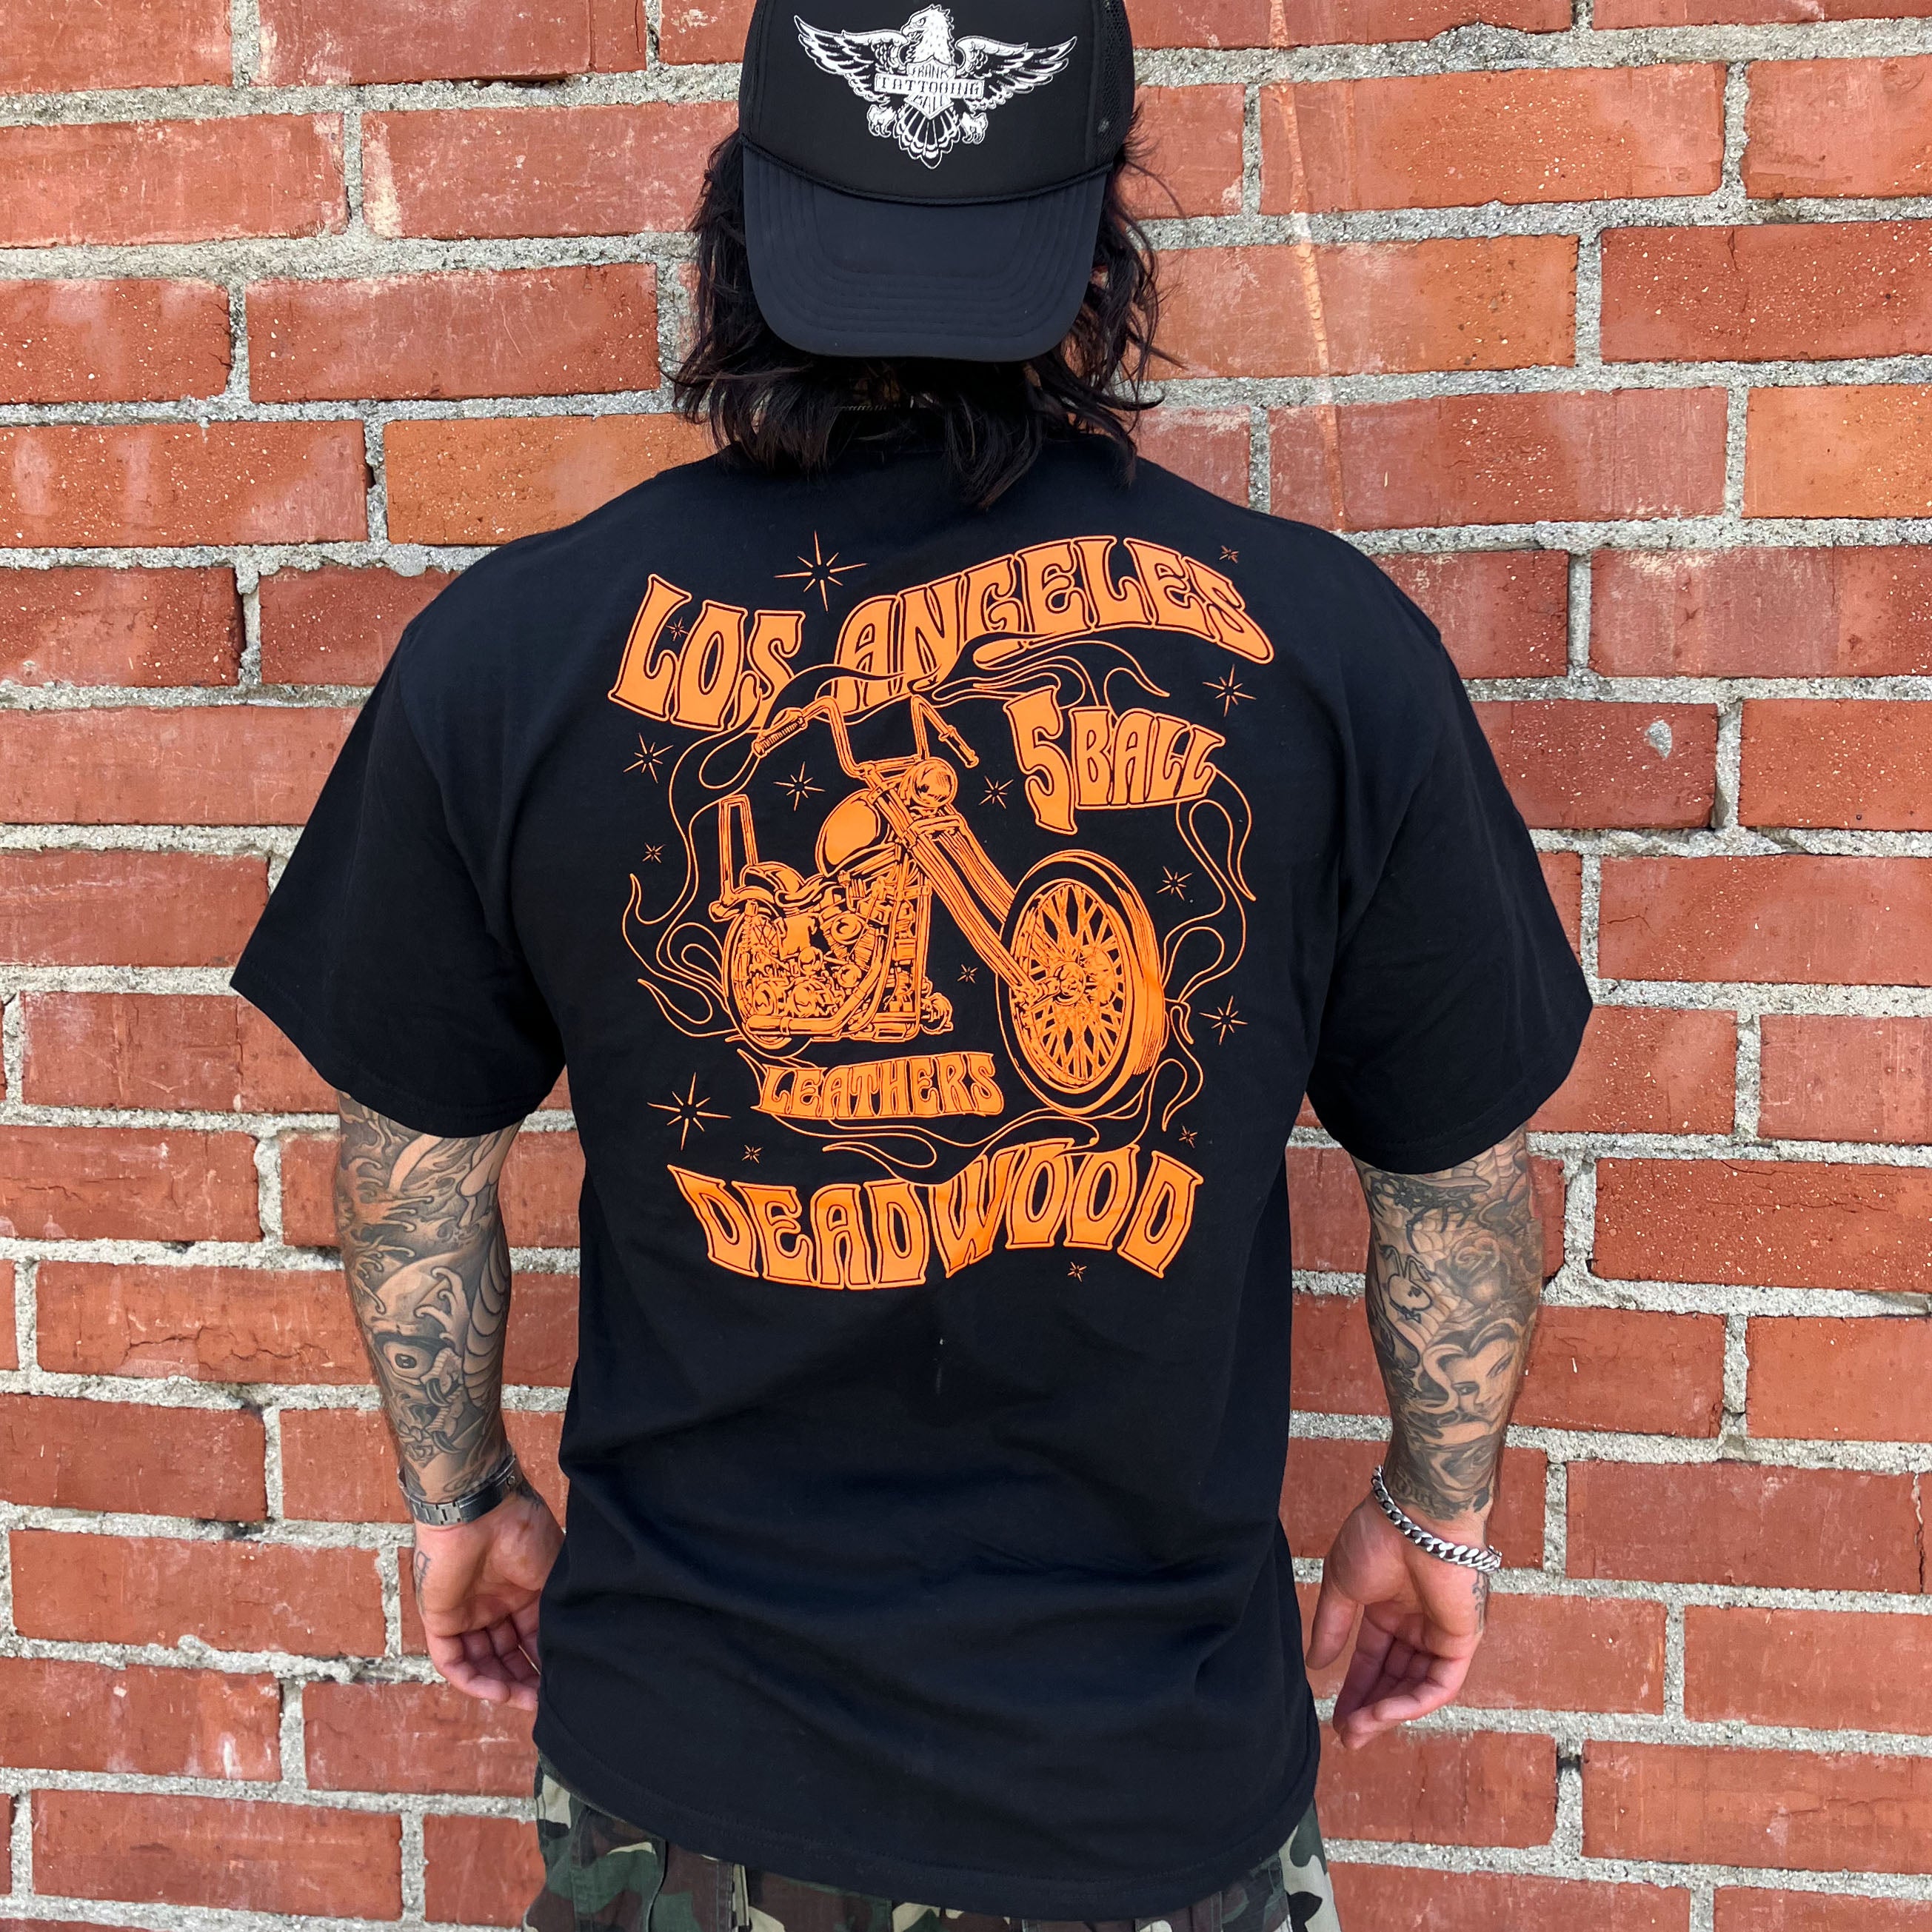 Deadwood Chopper T-Shirt